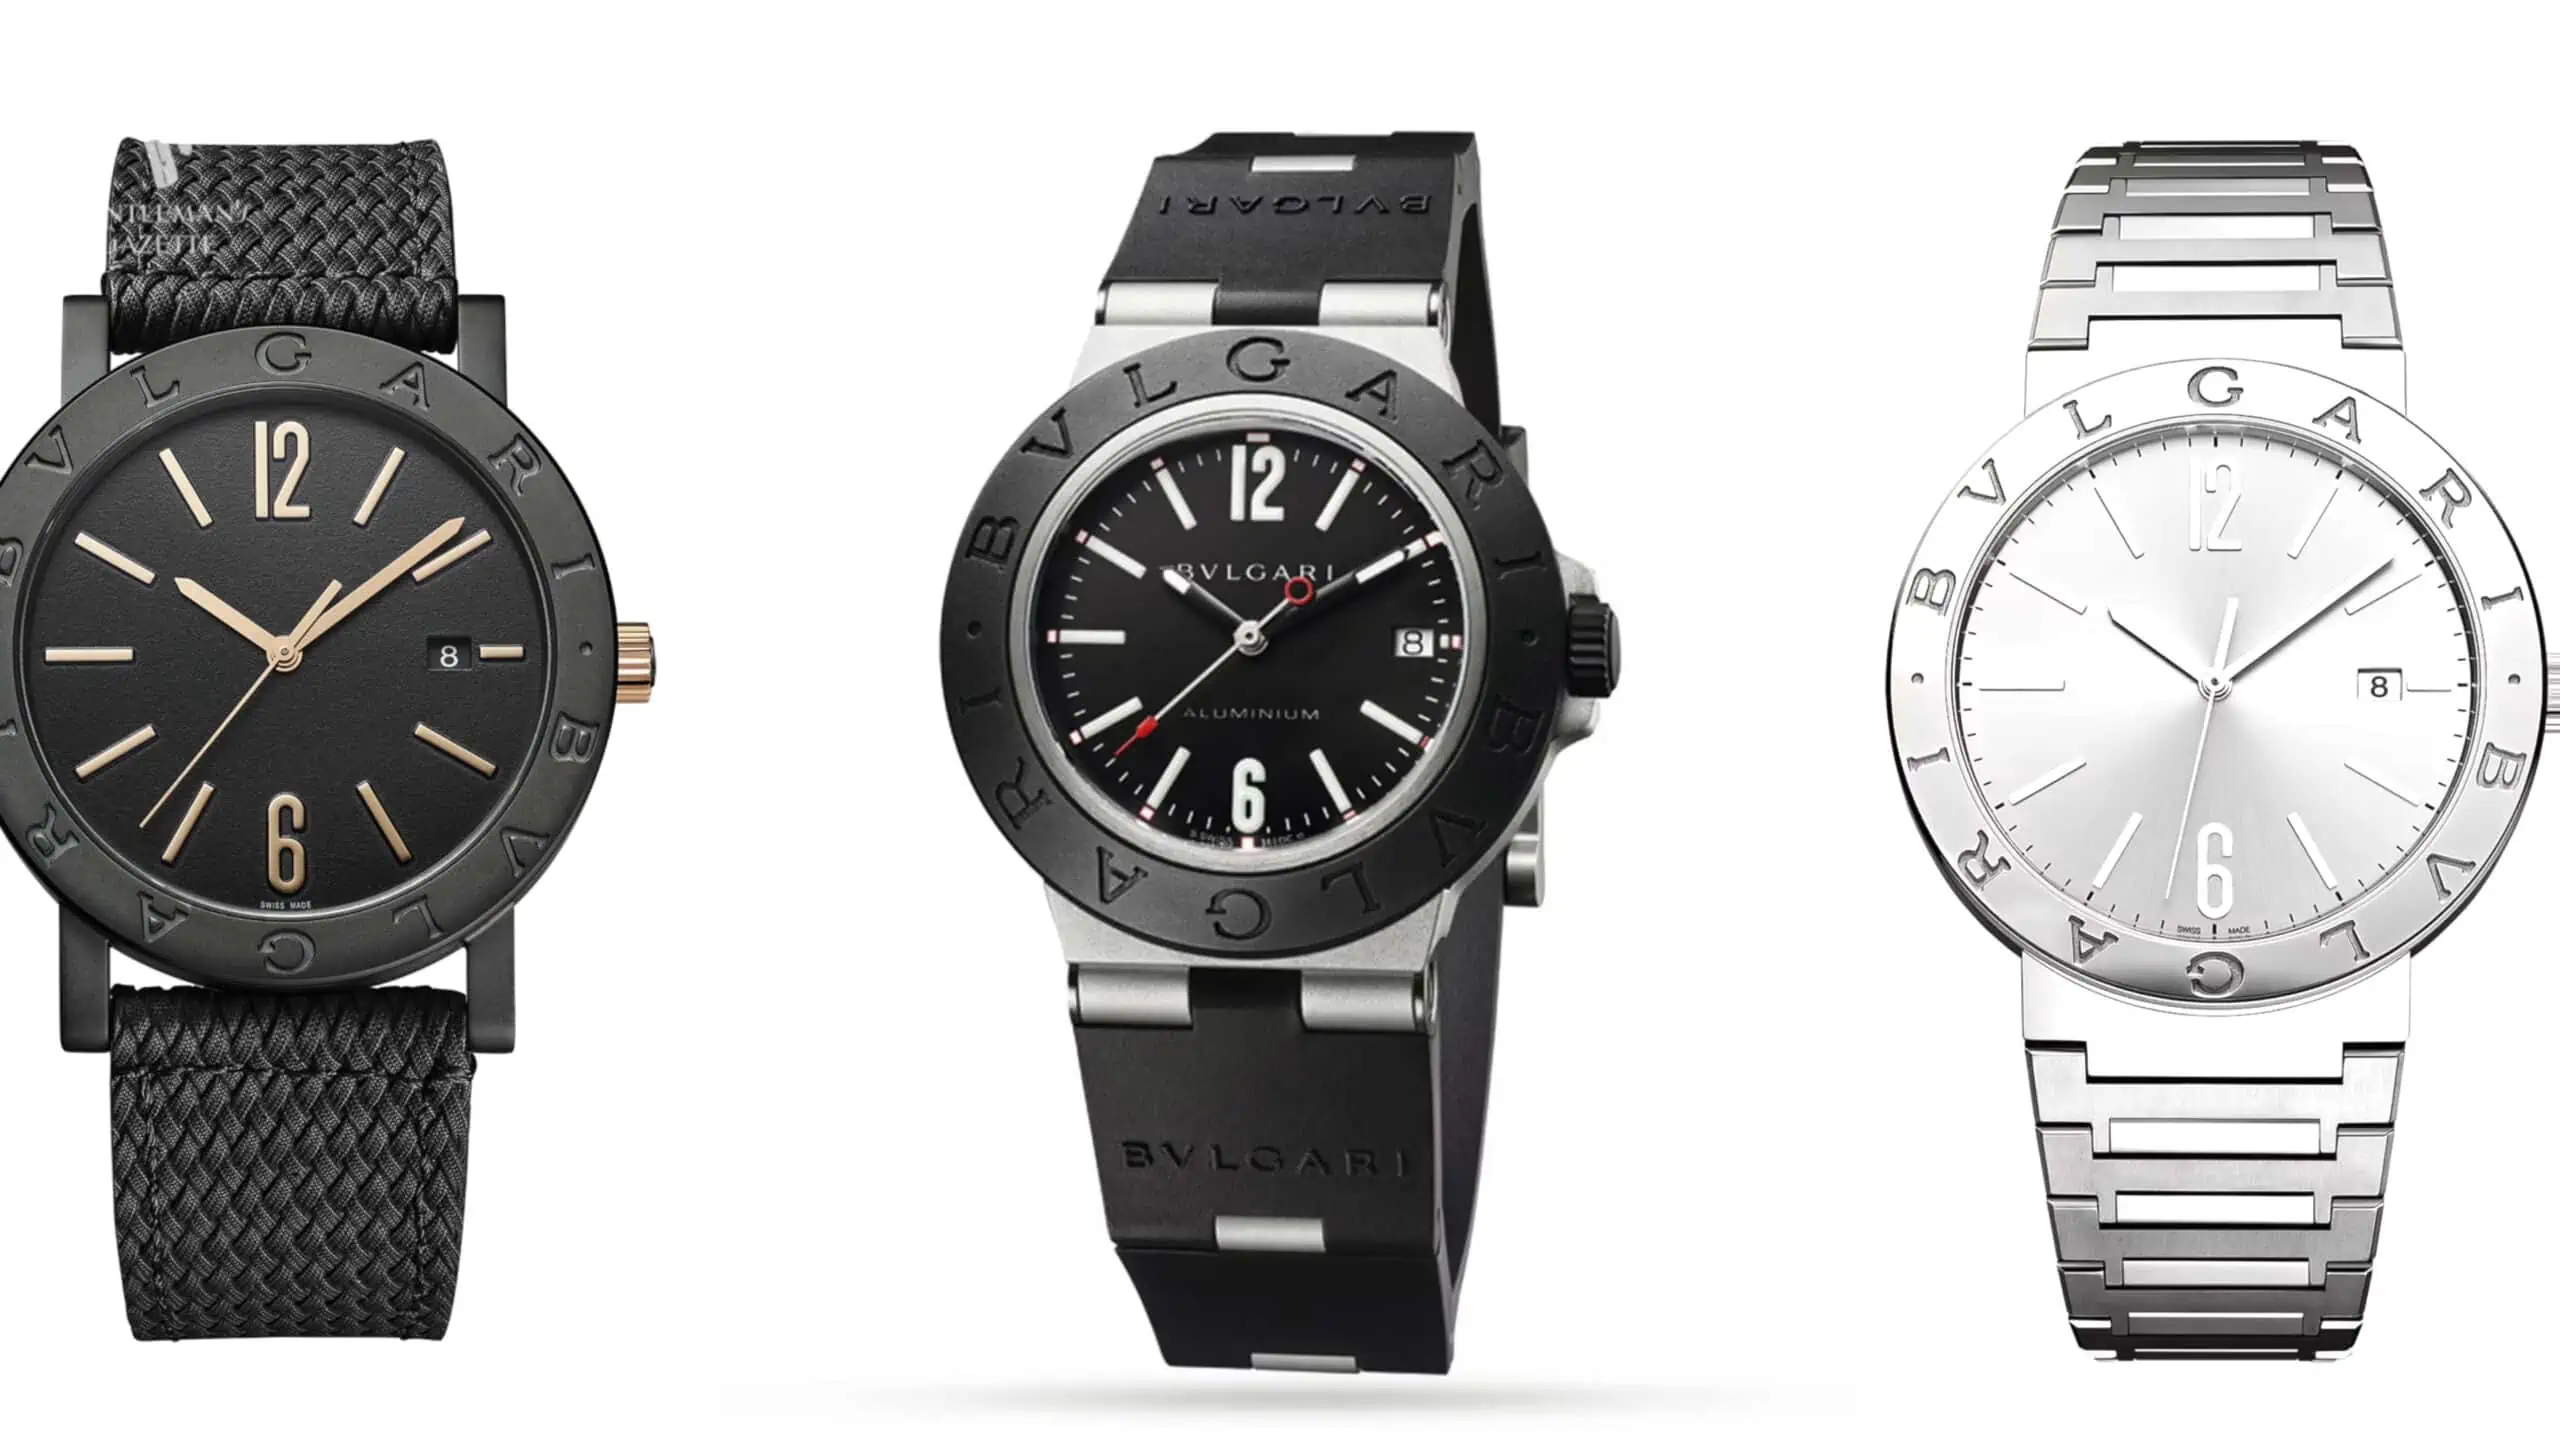 Swiss-Made Watch Logos A-G  Swiss watch brands, Swiss watches